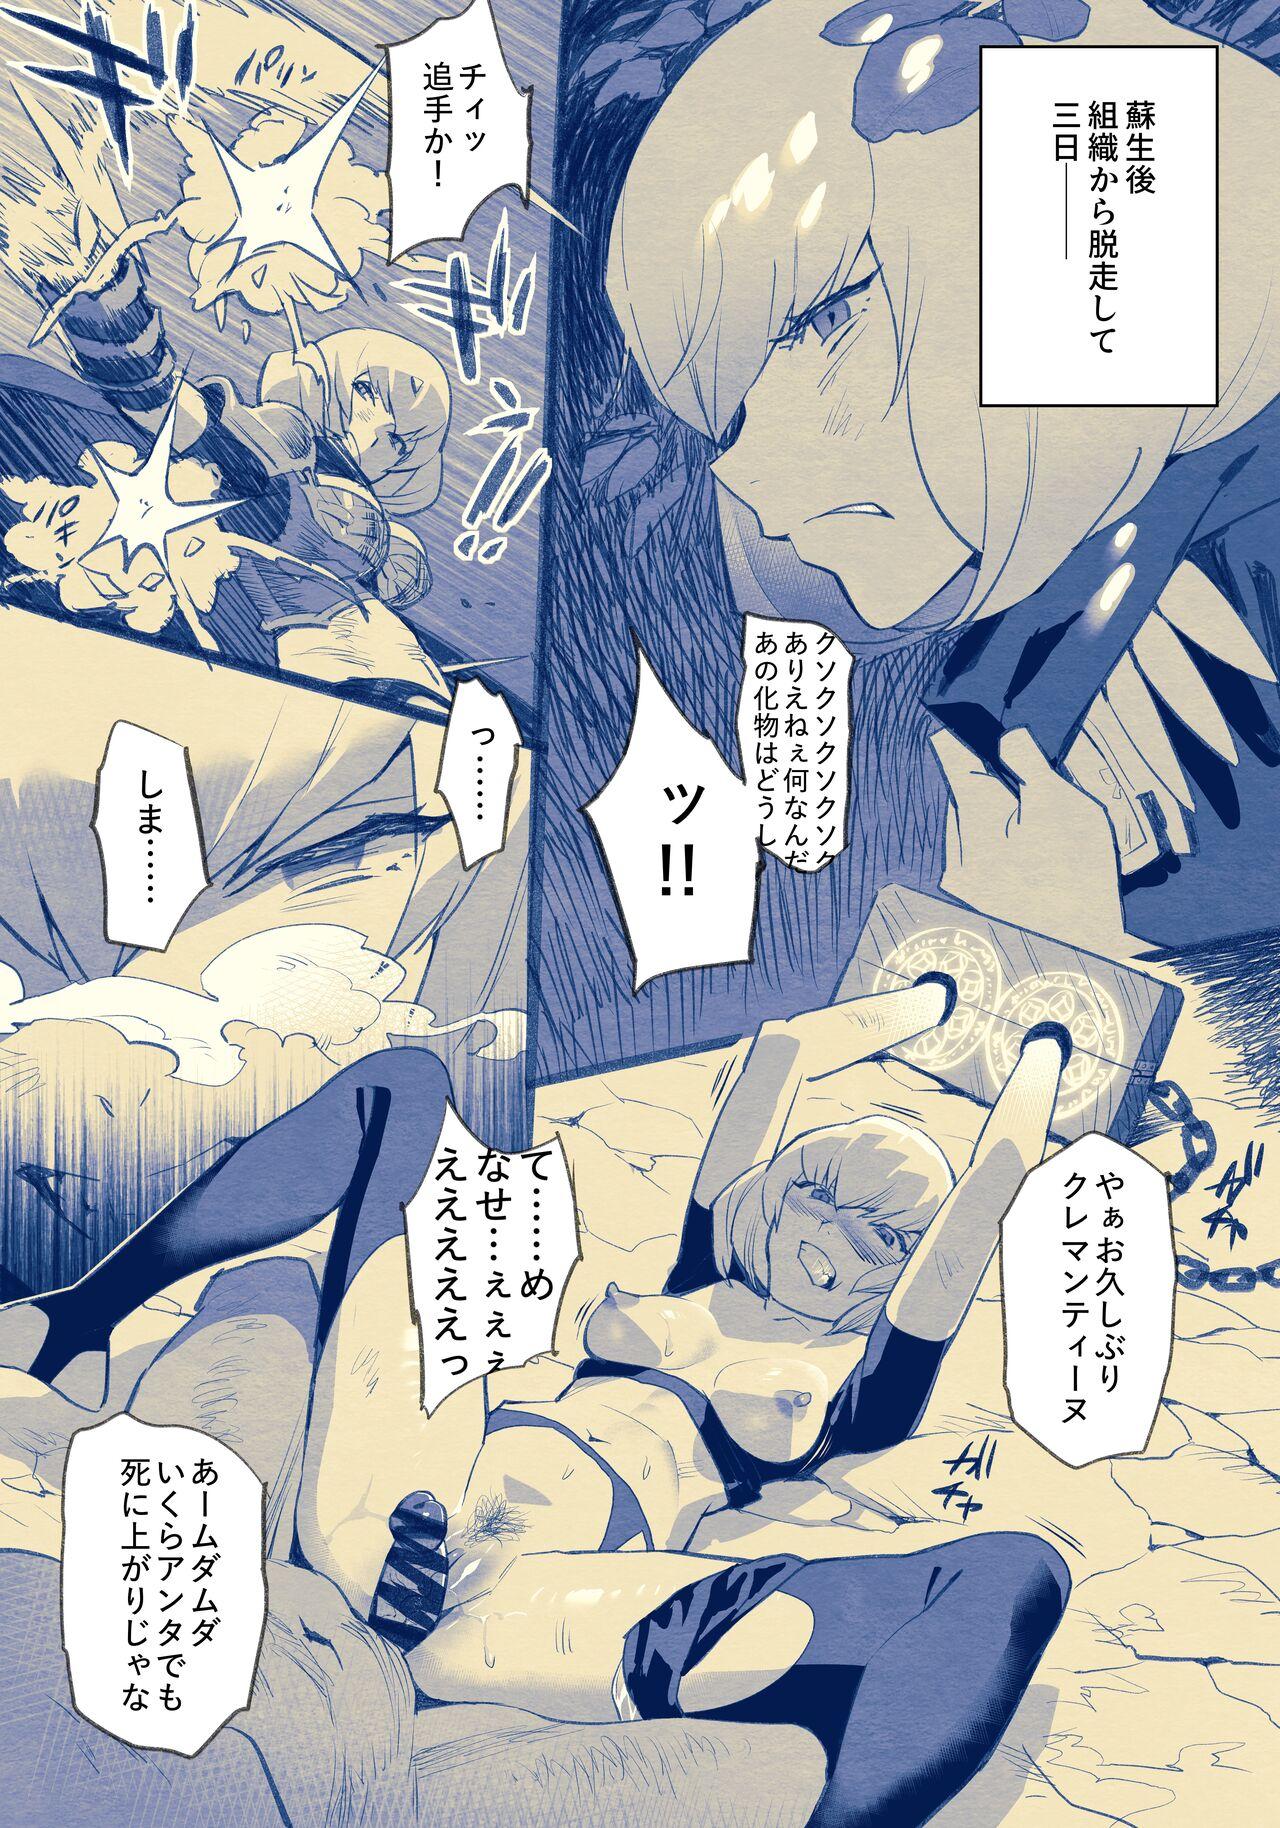 Zorra Clemen-san Wakarase 2P Manga - Overlord Horny - Picture 1